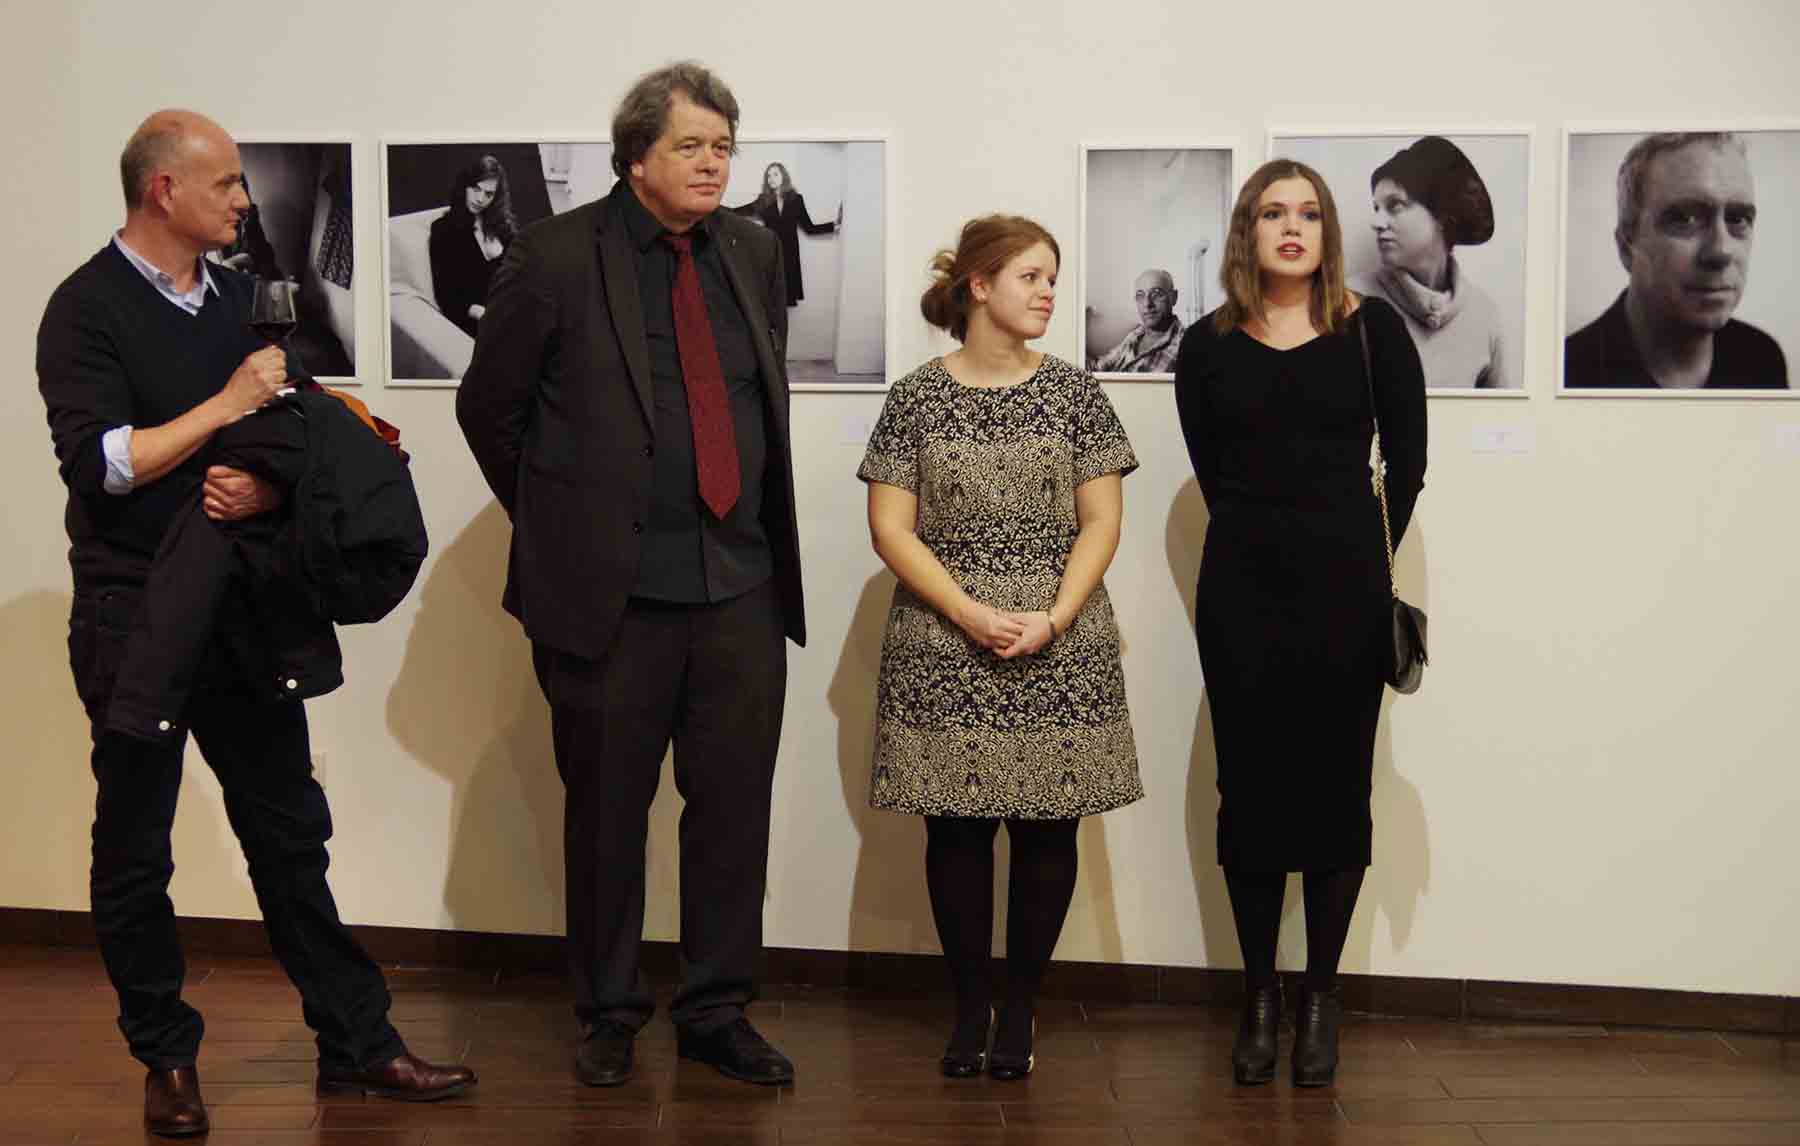 Axel Geis, Lars Schwander és az UVG Art Gallery munkatársai a Belső Reflexió című kiállítás január 28-ai megnyitóján - a szerző fotója